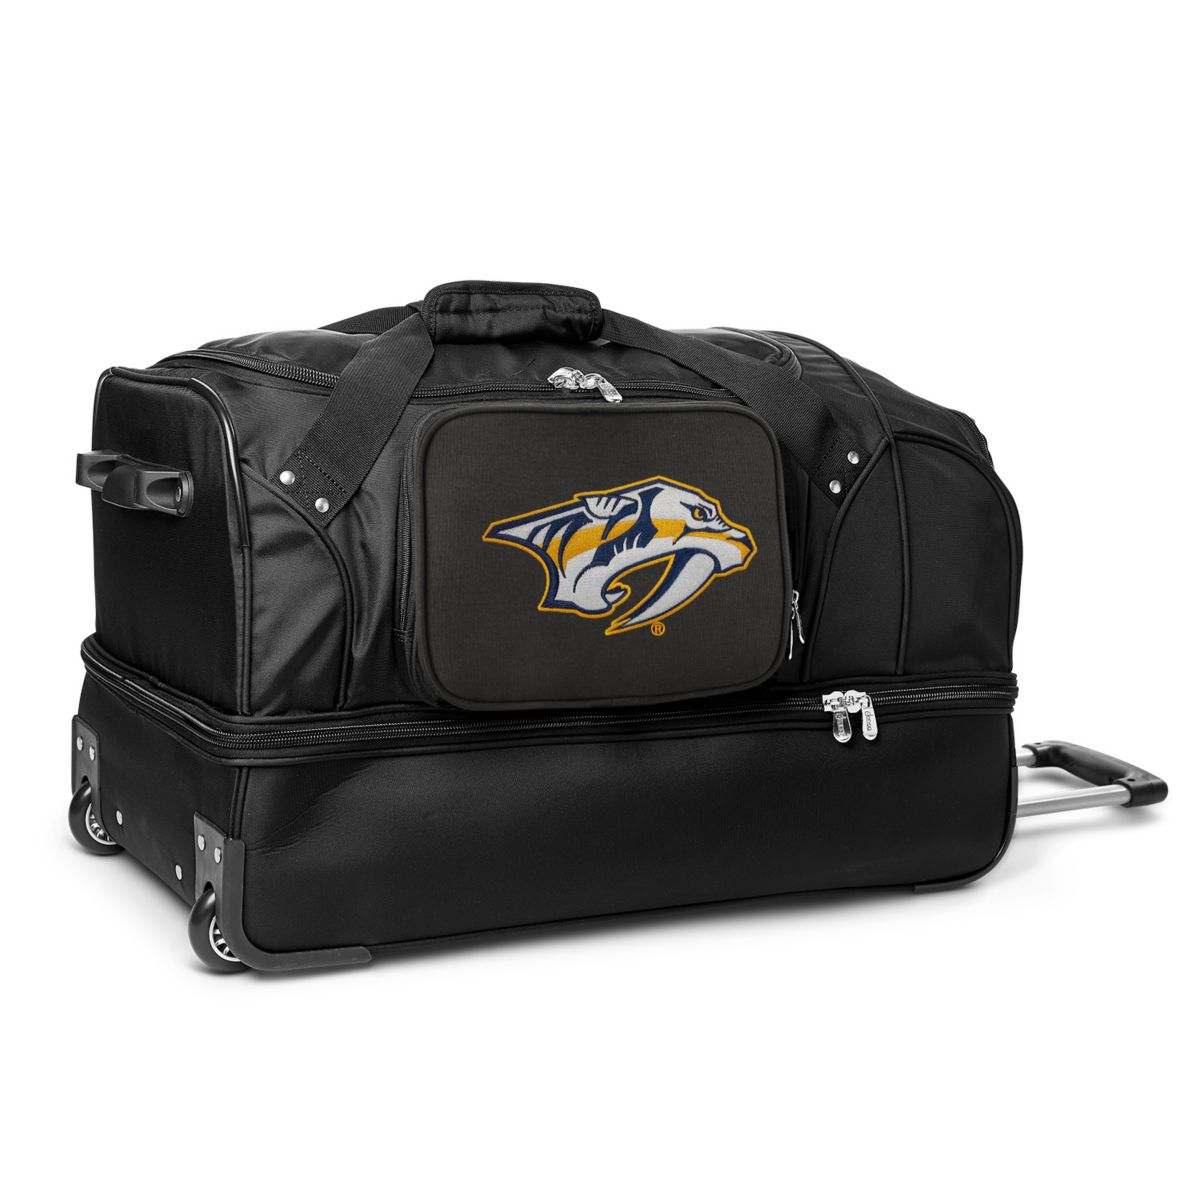 27-дюймовая спортивная сумка Nashville Predators на колесиках Denco